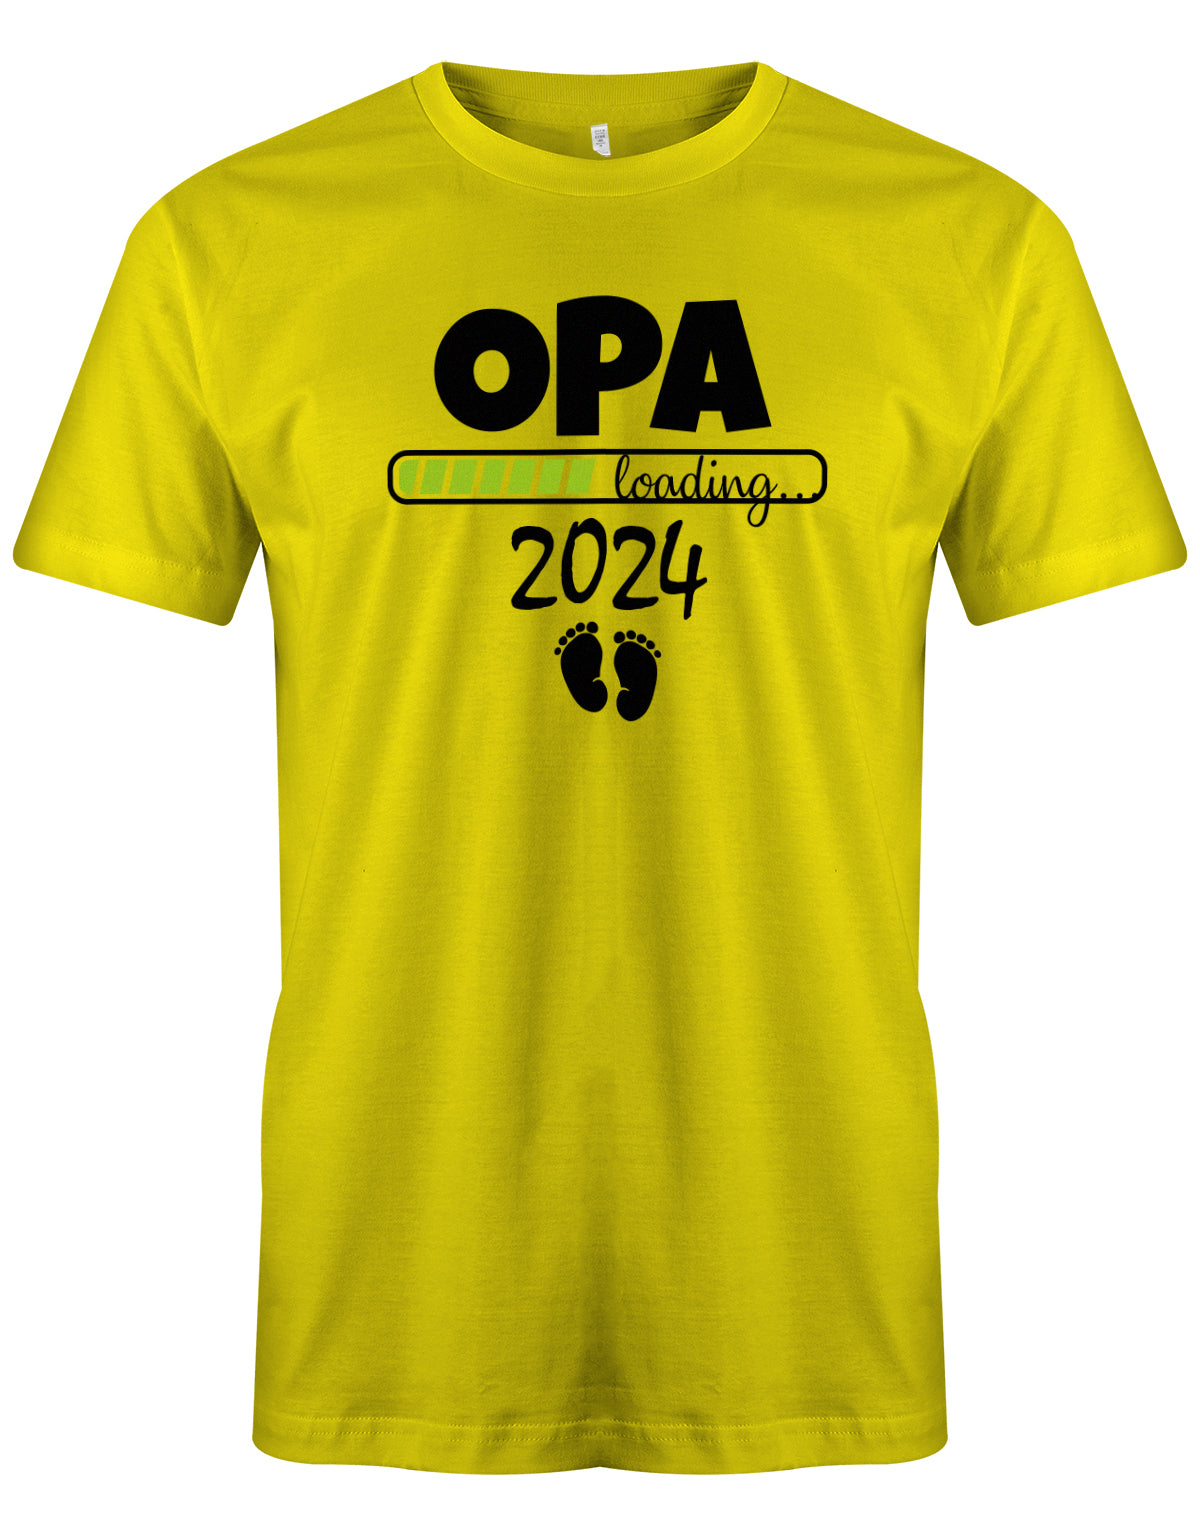 Opa T-Shirt Spruch für werdenden Opa - Opa Loading 2024 Balken lädt. Fußabdrücke Baby. Gelb